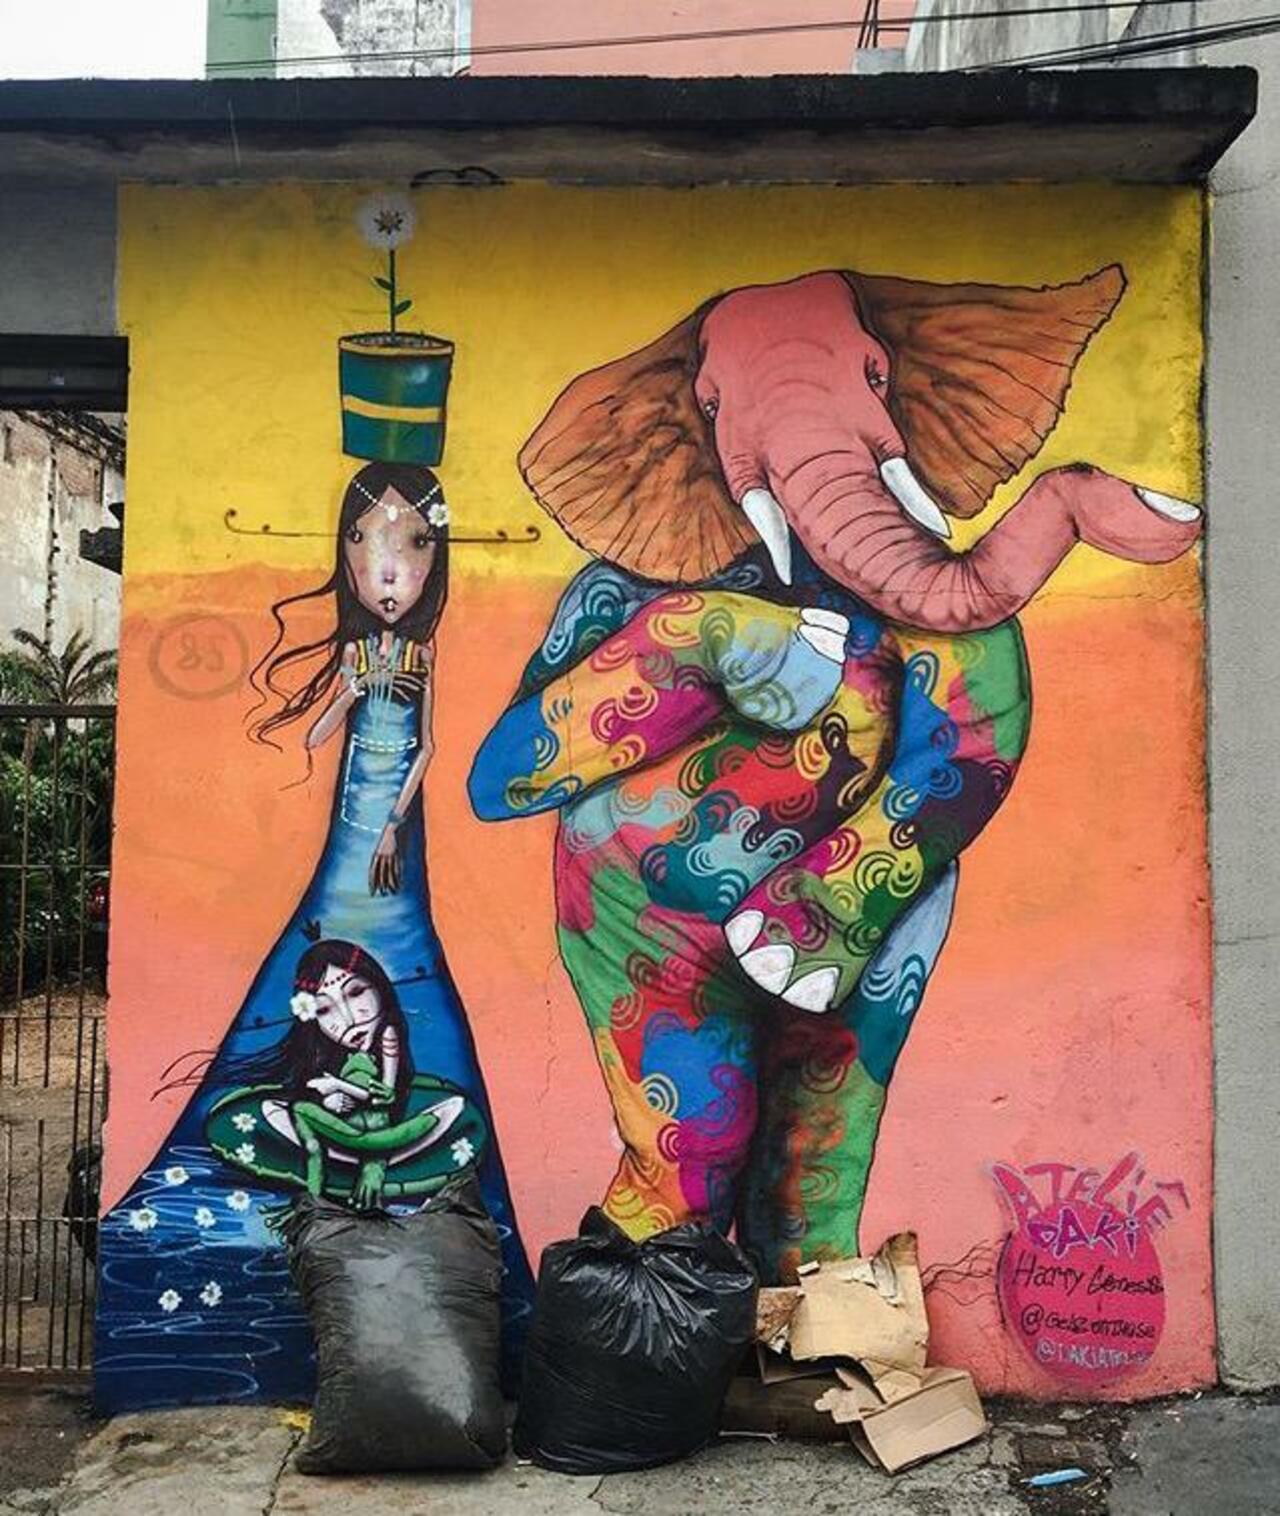 Street Art by Harry Geneis & Gelson in São Paulo 

#art #mural #graffiti #streetart http://t.co/Fc0tX7Zew5